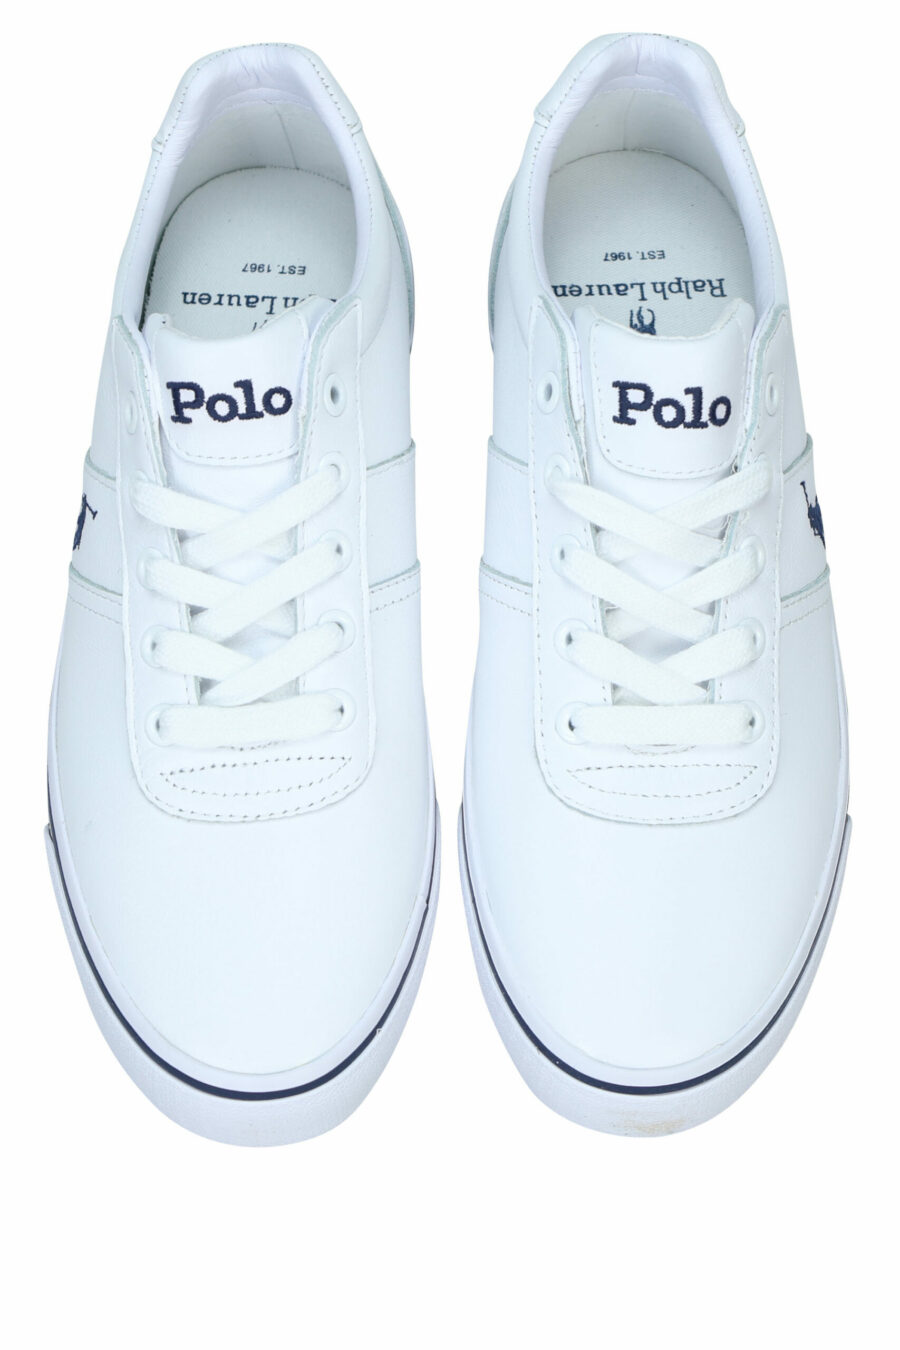 Weiße Turnschuhe mit blauen Details und "Polo"-Logo - 3615737560351 4 skaliert